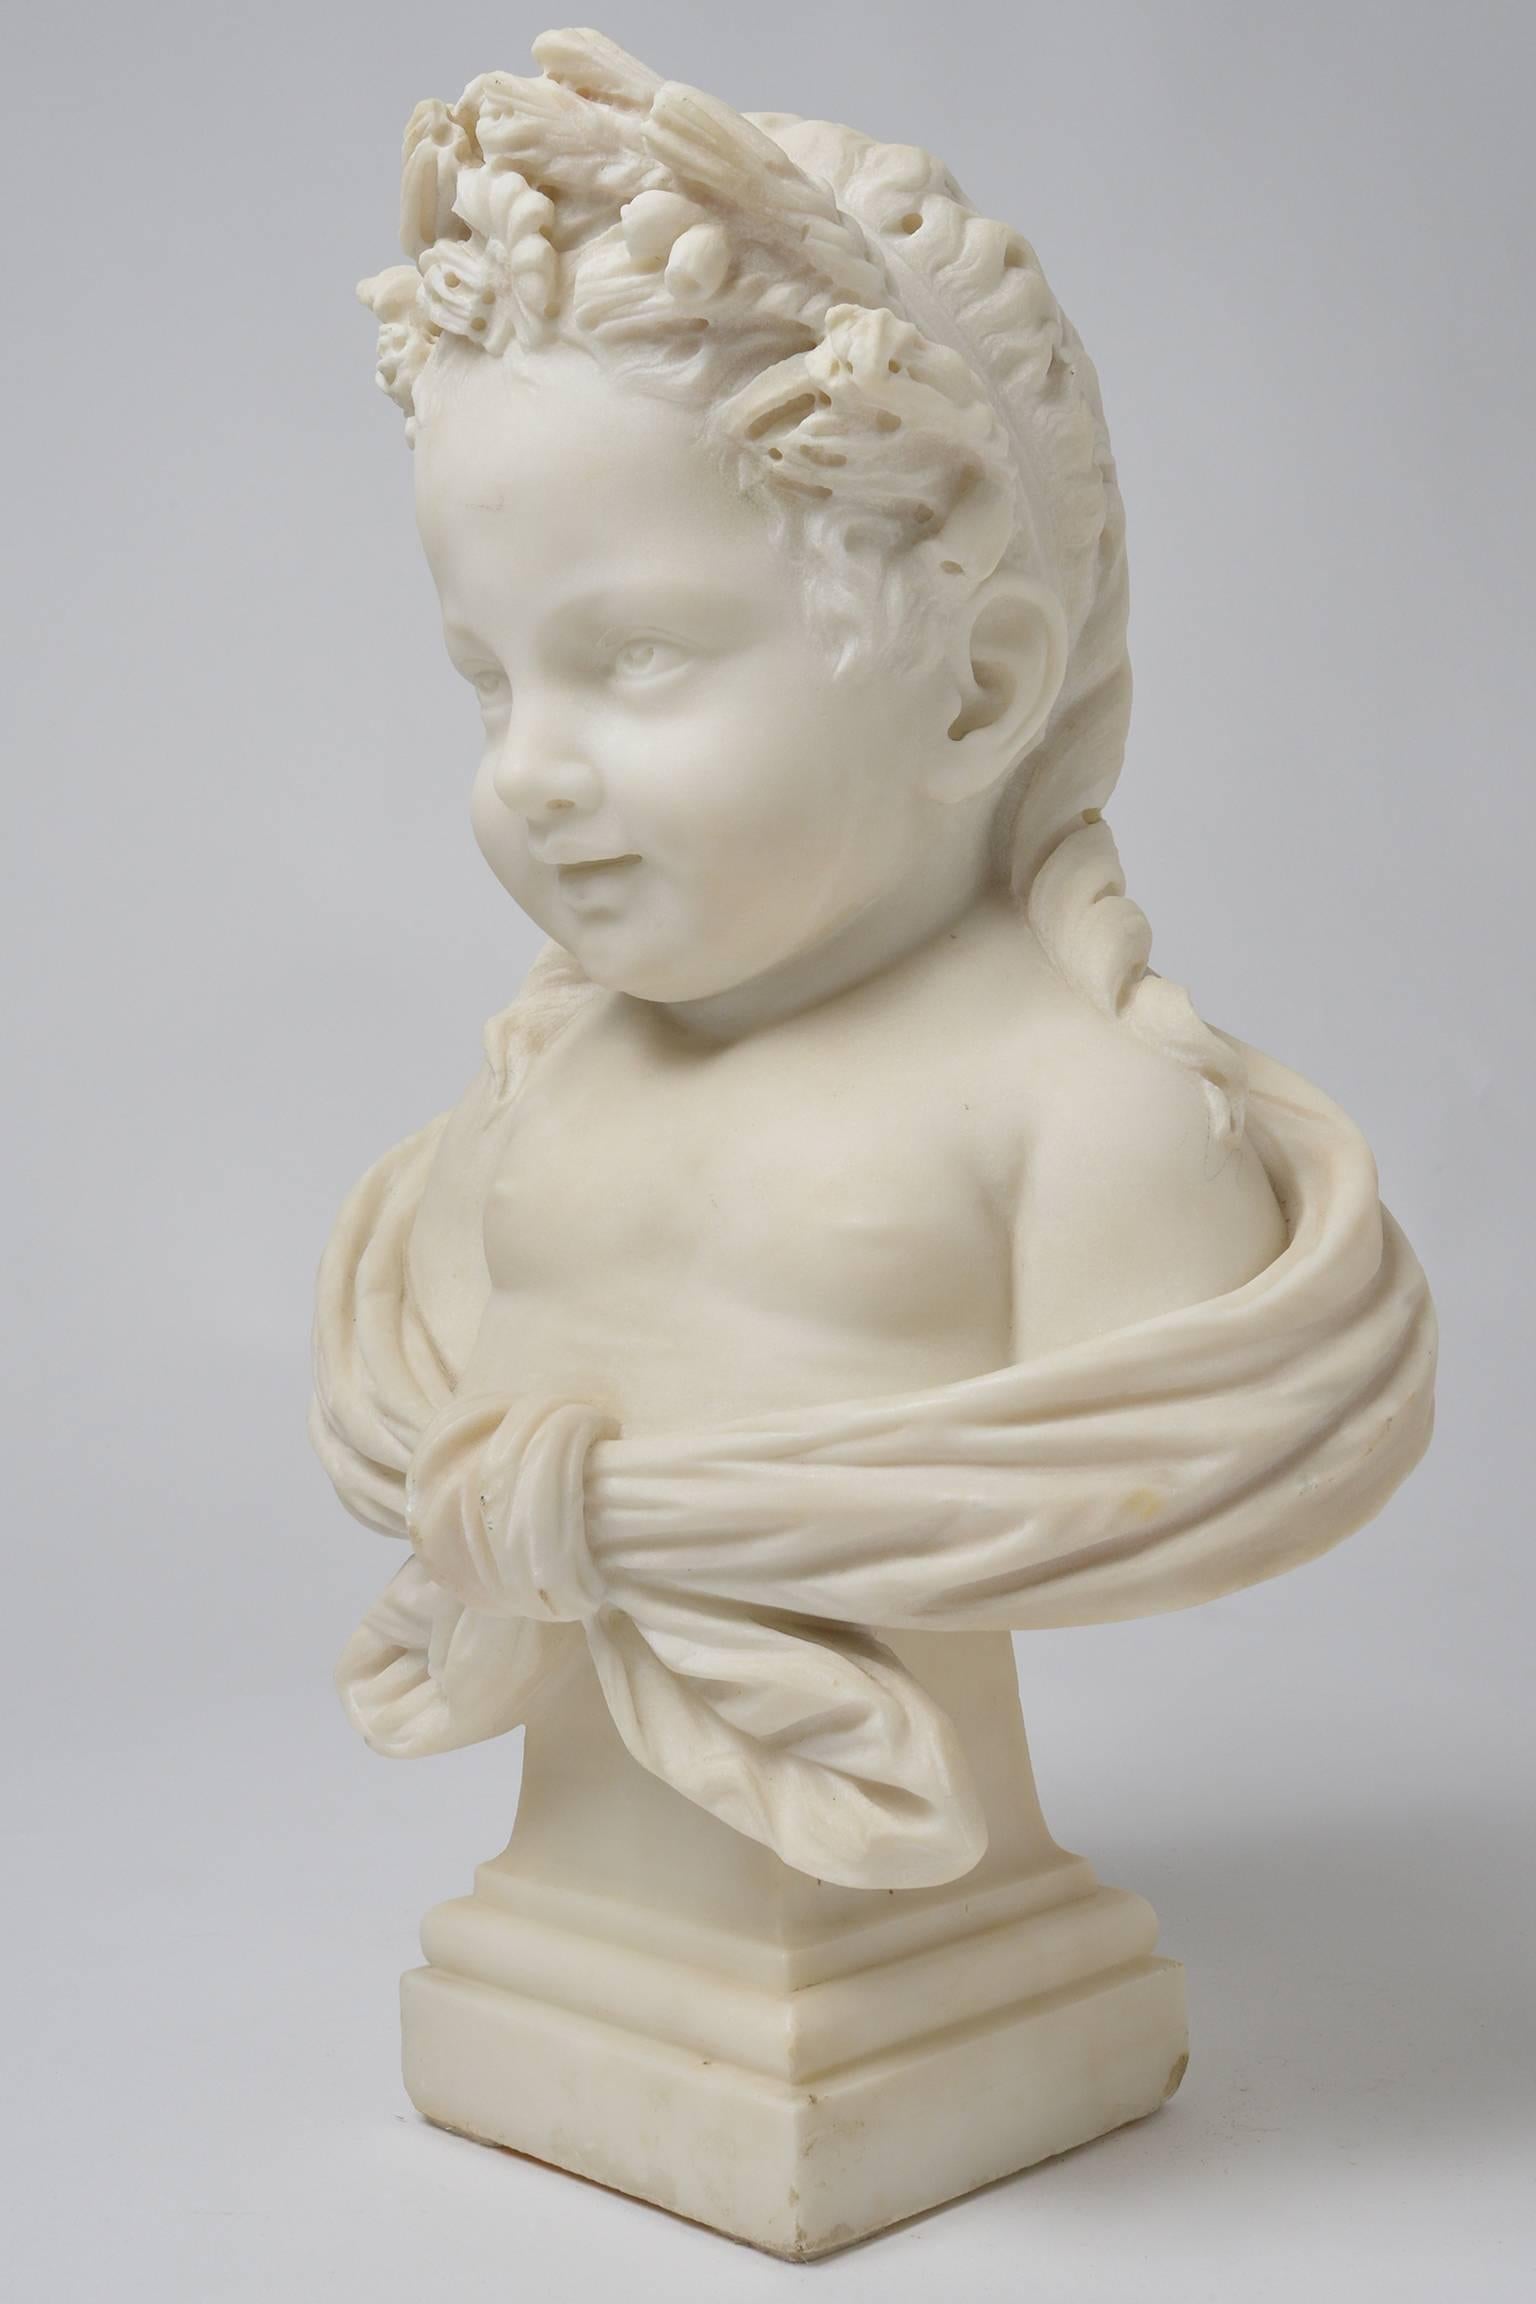 Wunderschöne weiße Marmorstatue eines lächelnden süßen kleinen Mädchens, mit Blumen im Haar. eine sehr ungewöhnliche Marmorstatue.
nr. O/7552.